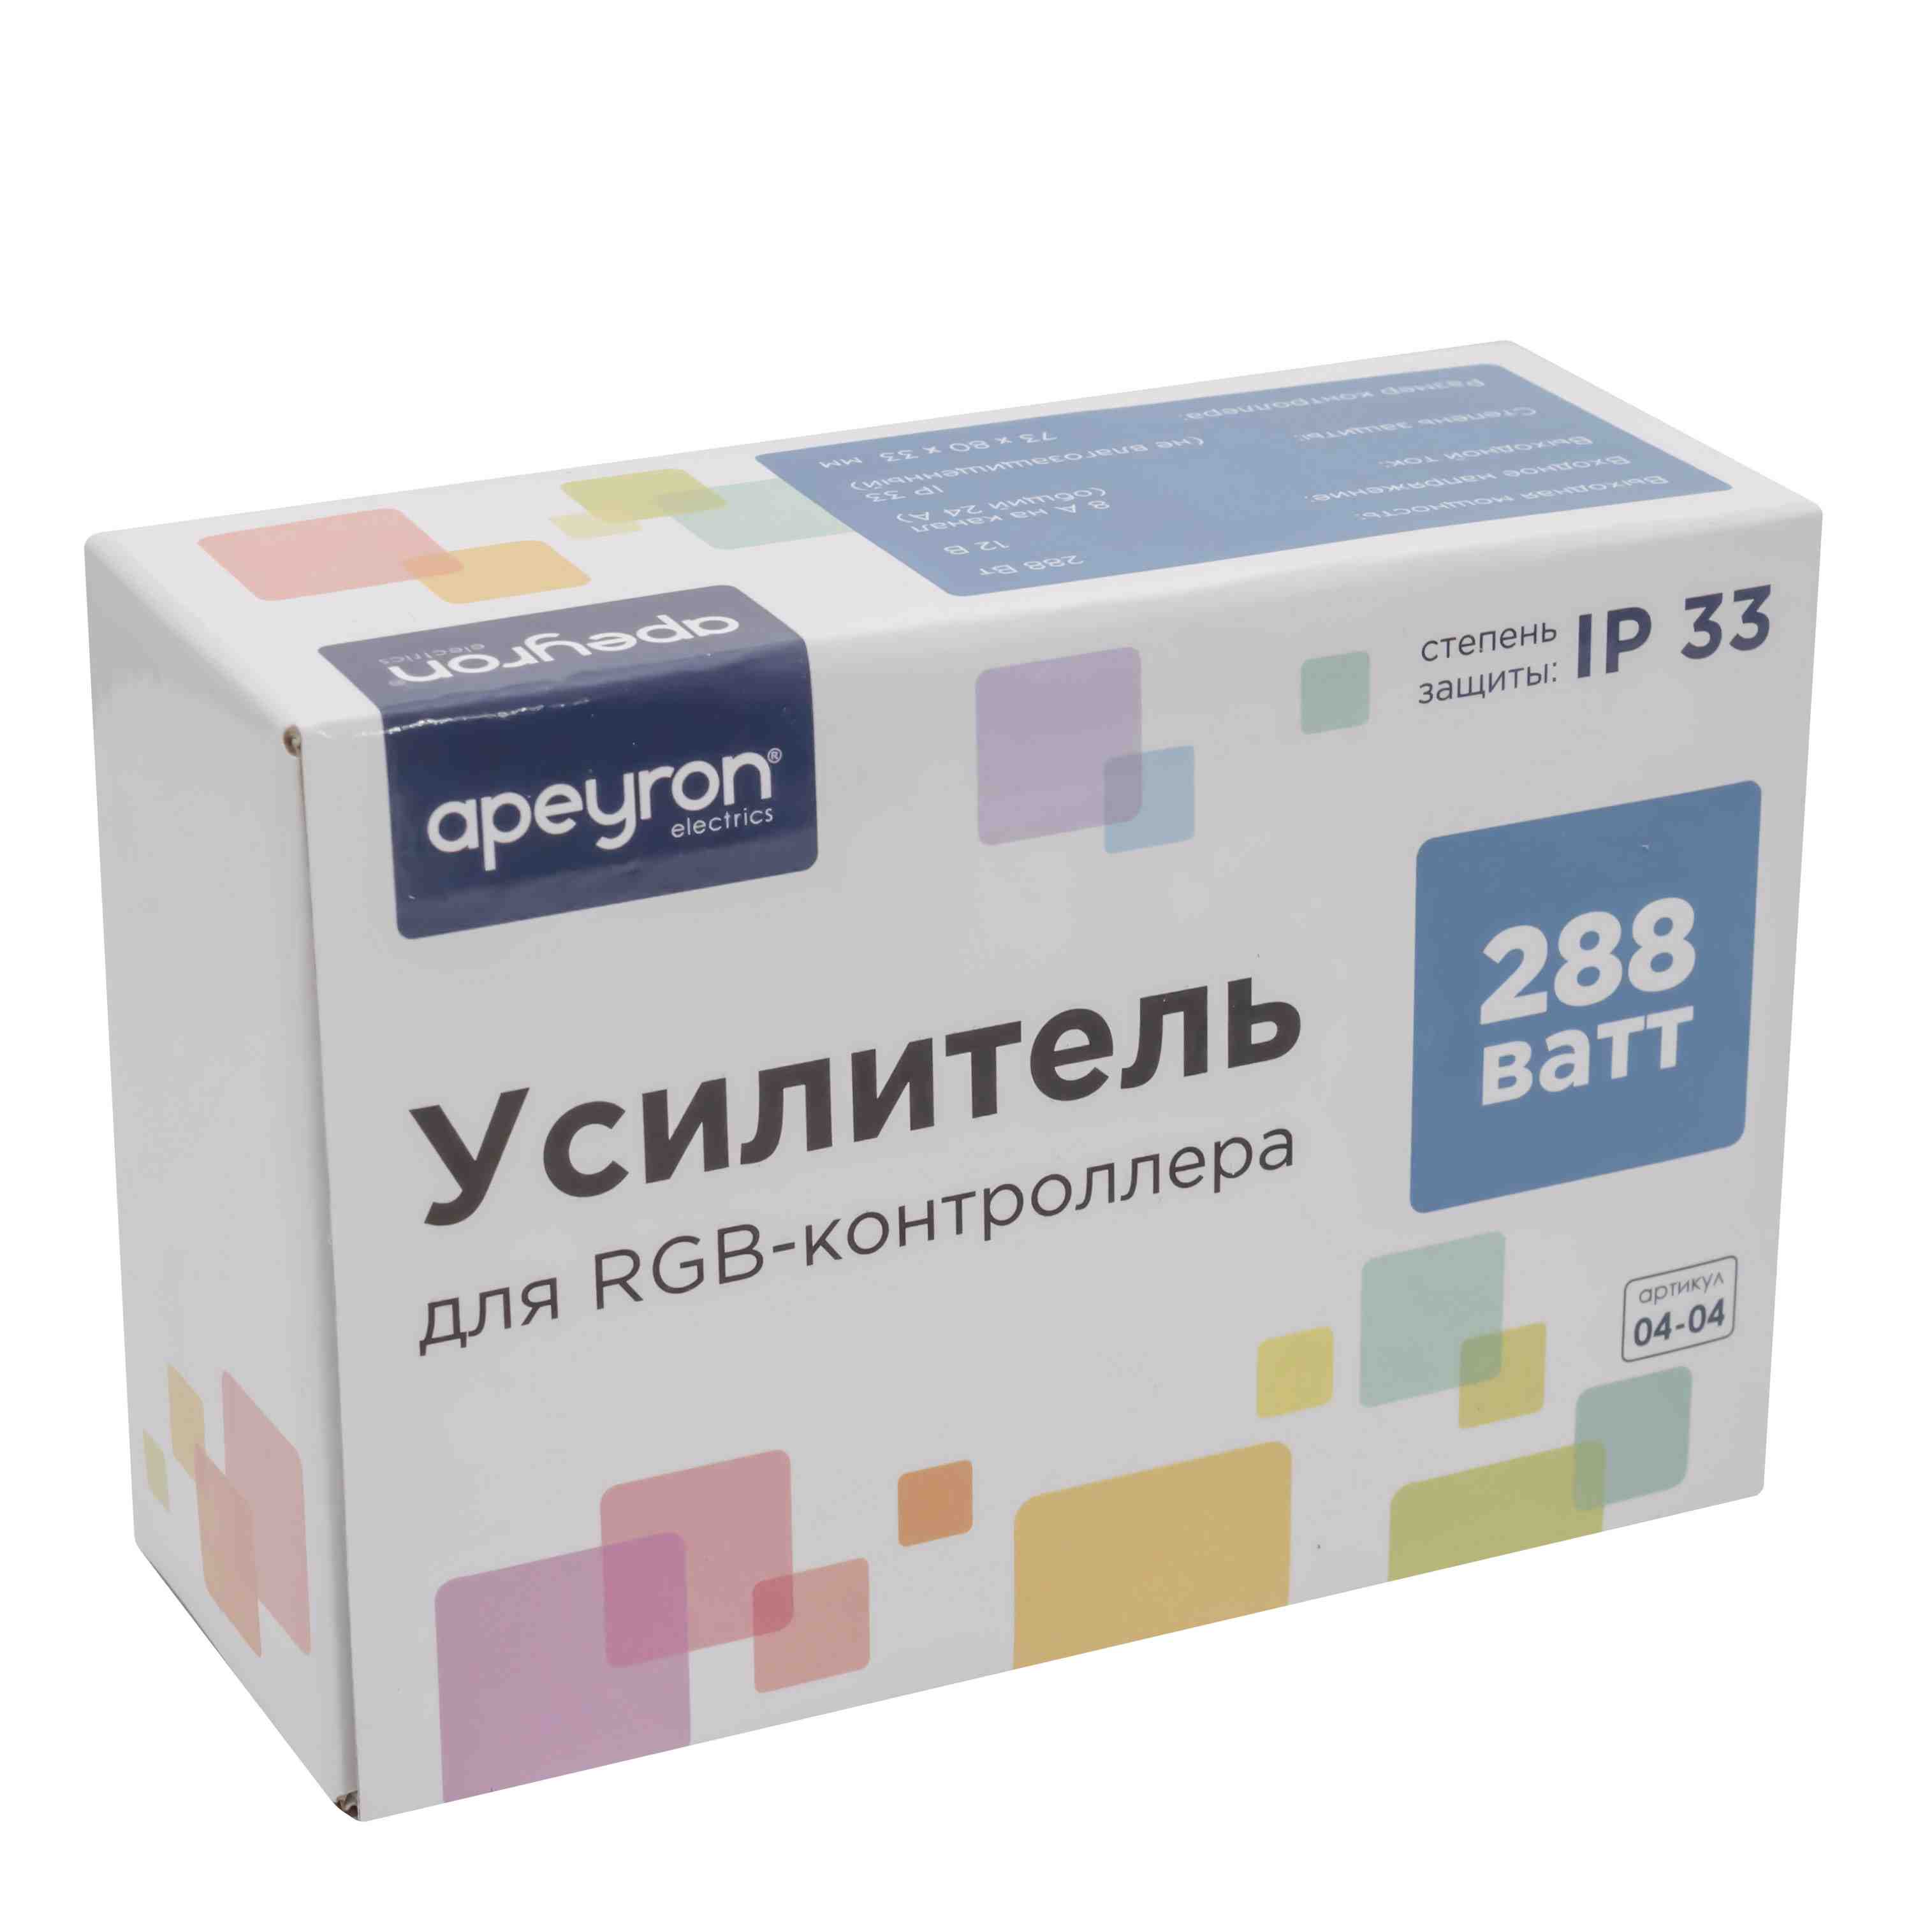 Усилитель RGB Apeyron 12В 288Вт 3 канала*8А 04-04(288) в Москве